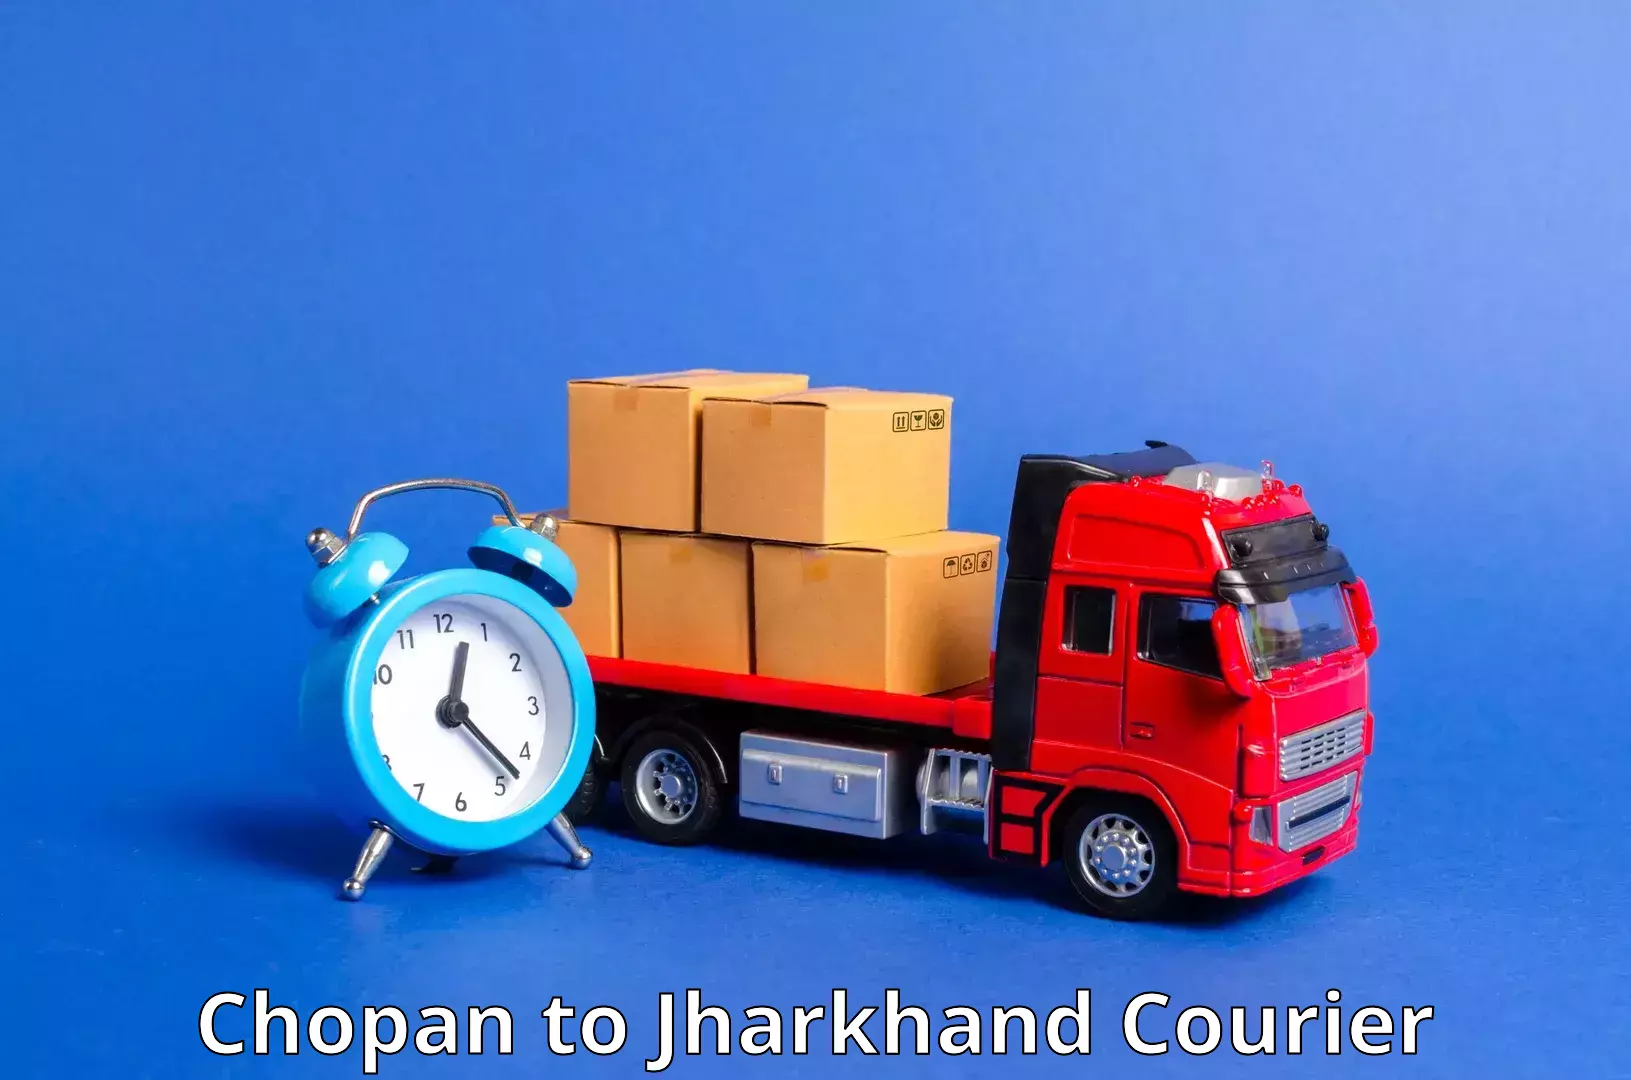 Express package handling Chopan to Bokaro